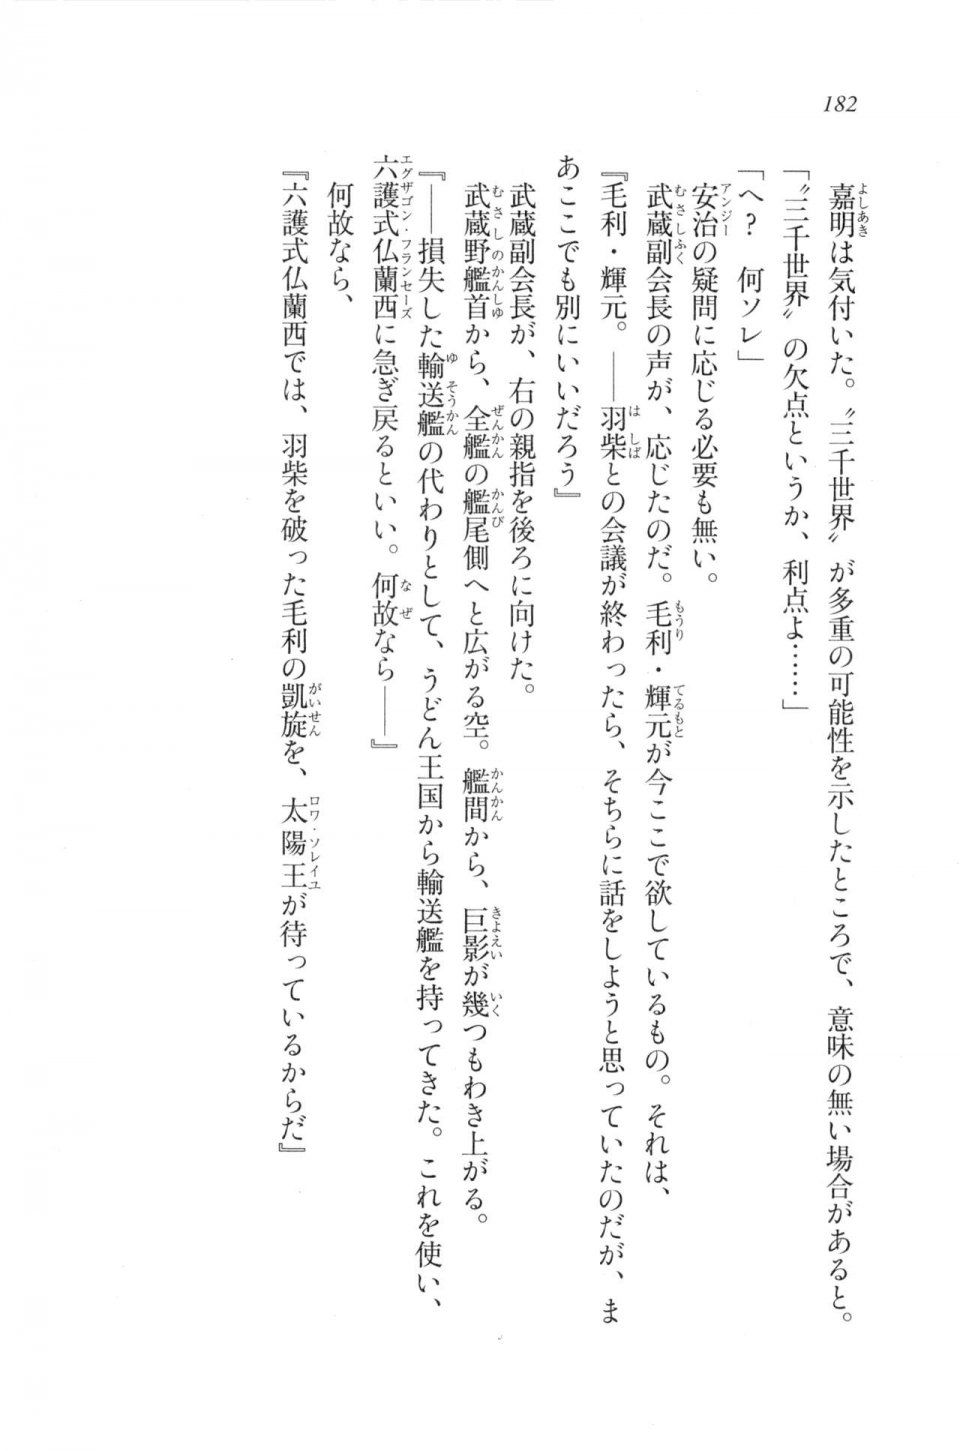 Kyoukai Senjou no Horizon LN Vol 20(8B) - Photo #182